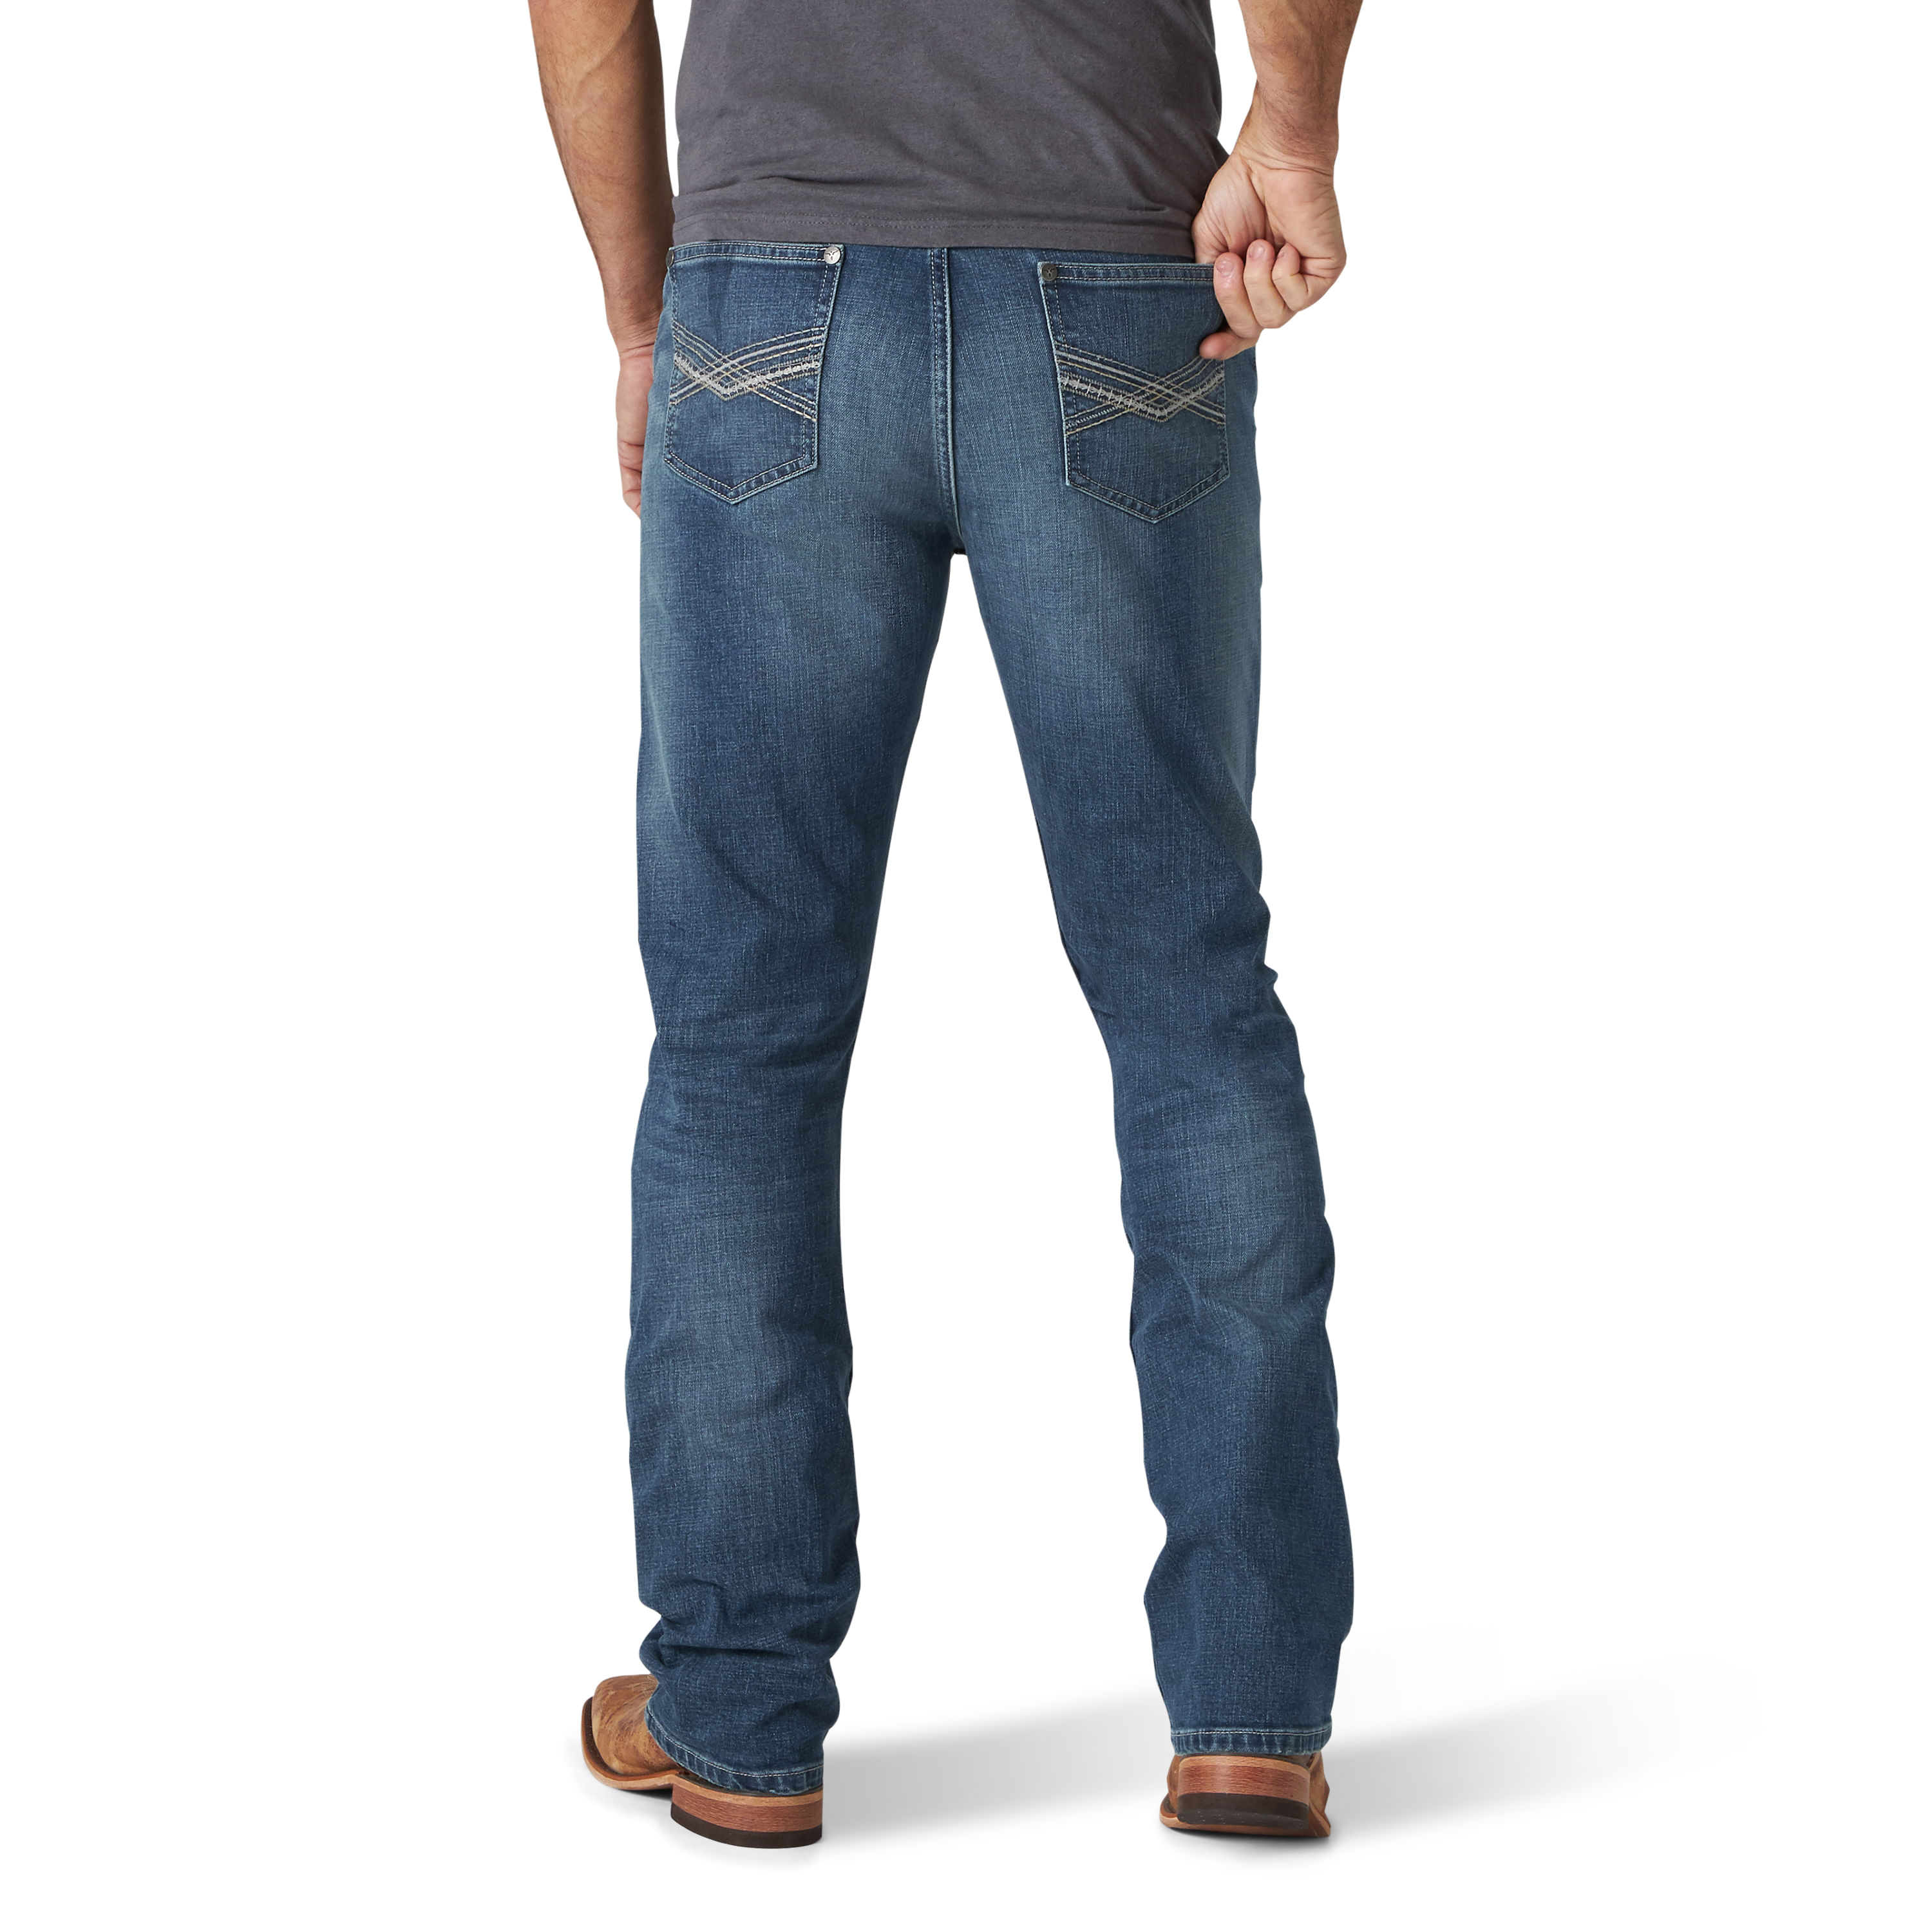 Mens-Wrangler-Slim-Fit-Jeans-245310.jpg?v=637395625754900000